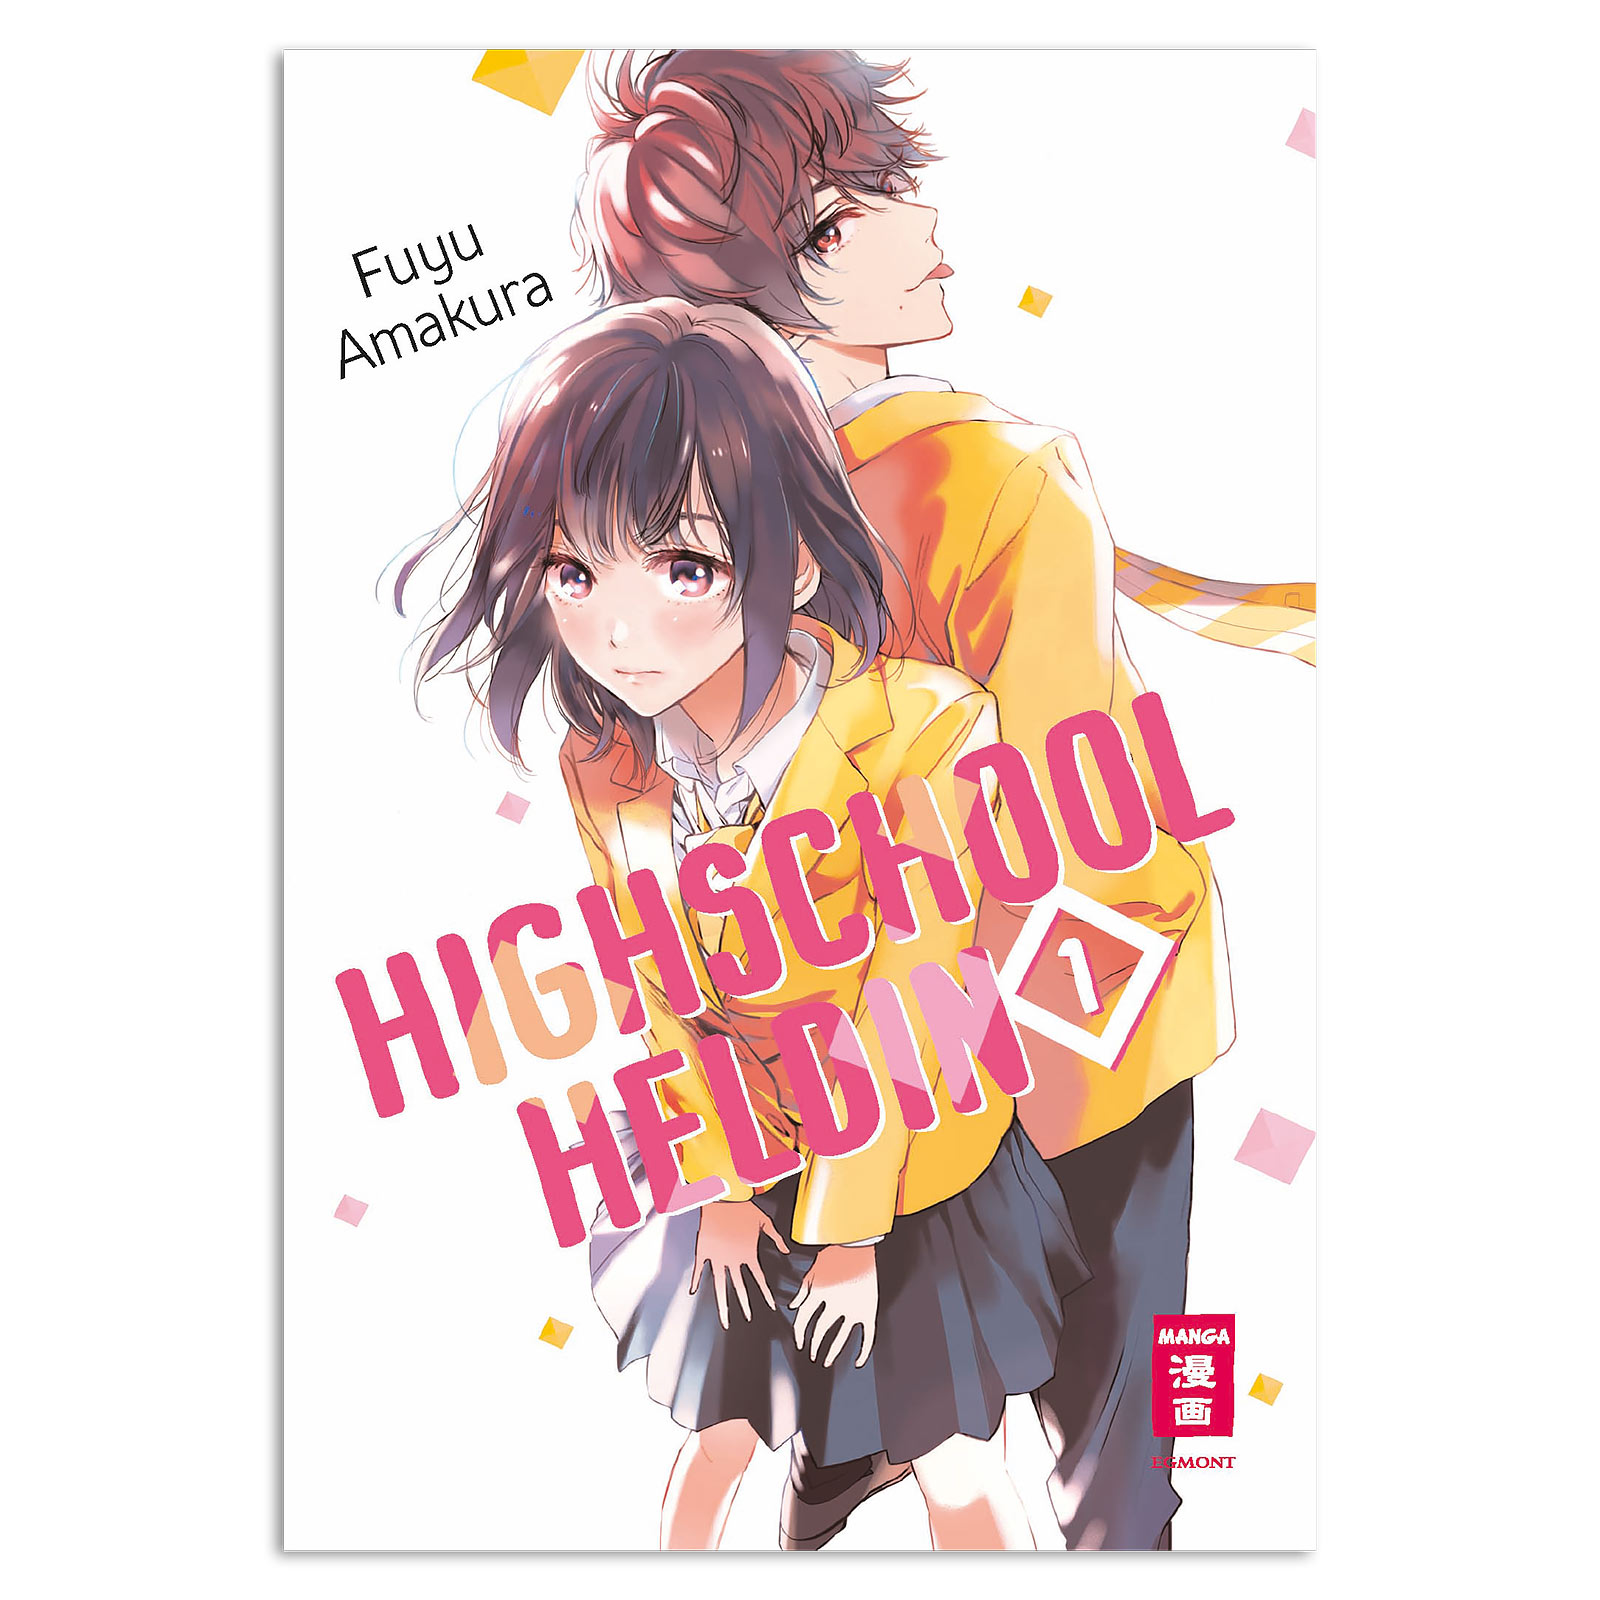 Highschool Heroine - Volume 1 Paperback